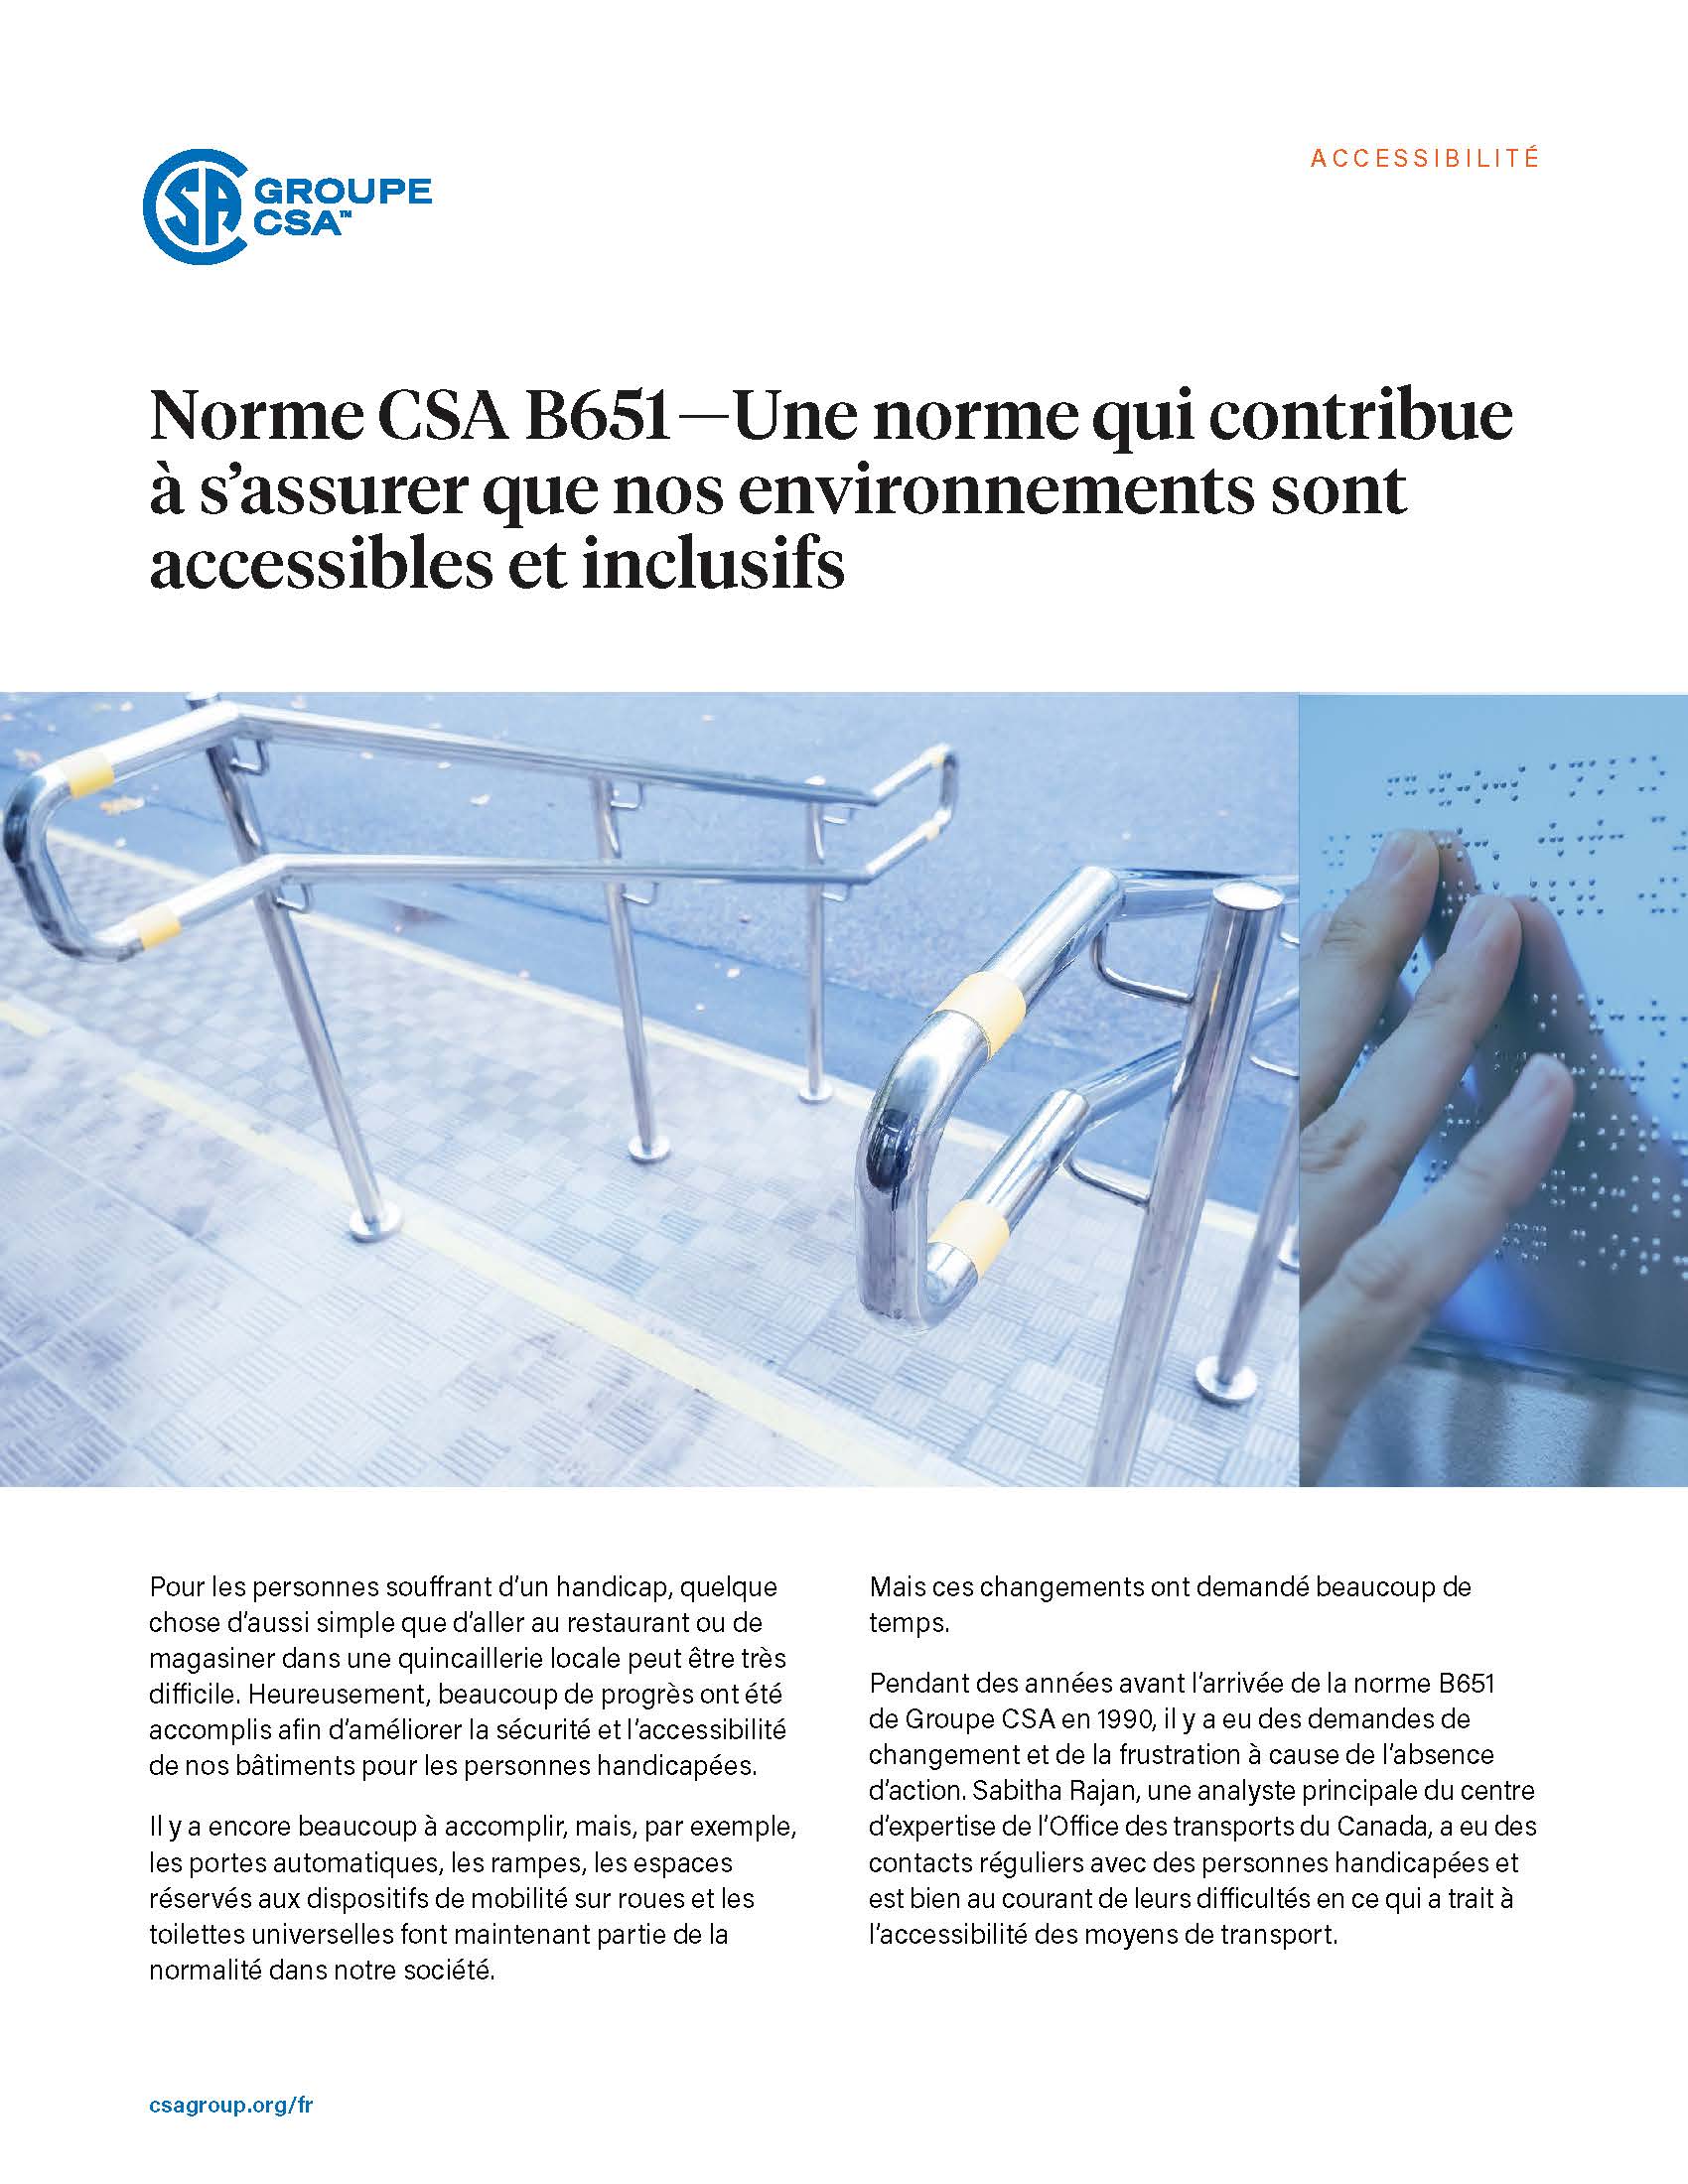 Page titre pour l’étude de cas “Norme CSA B651 — Une norme qui contribue à s’assurer que nos environnements sont accessibles et inclusifs.”